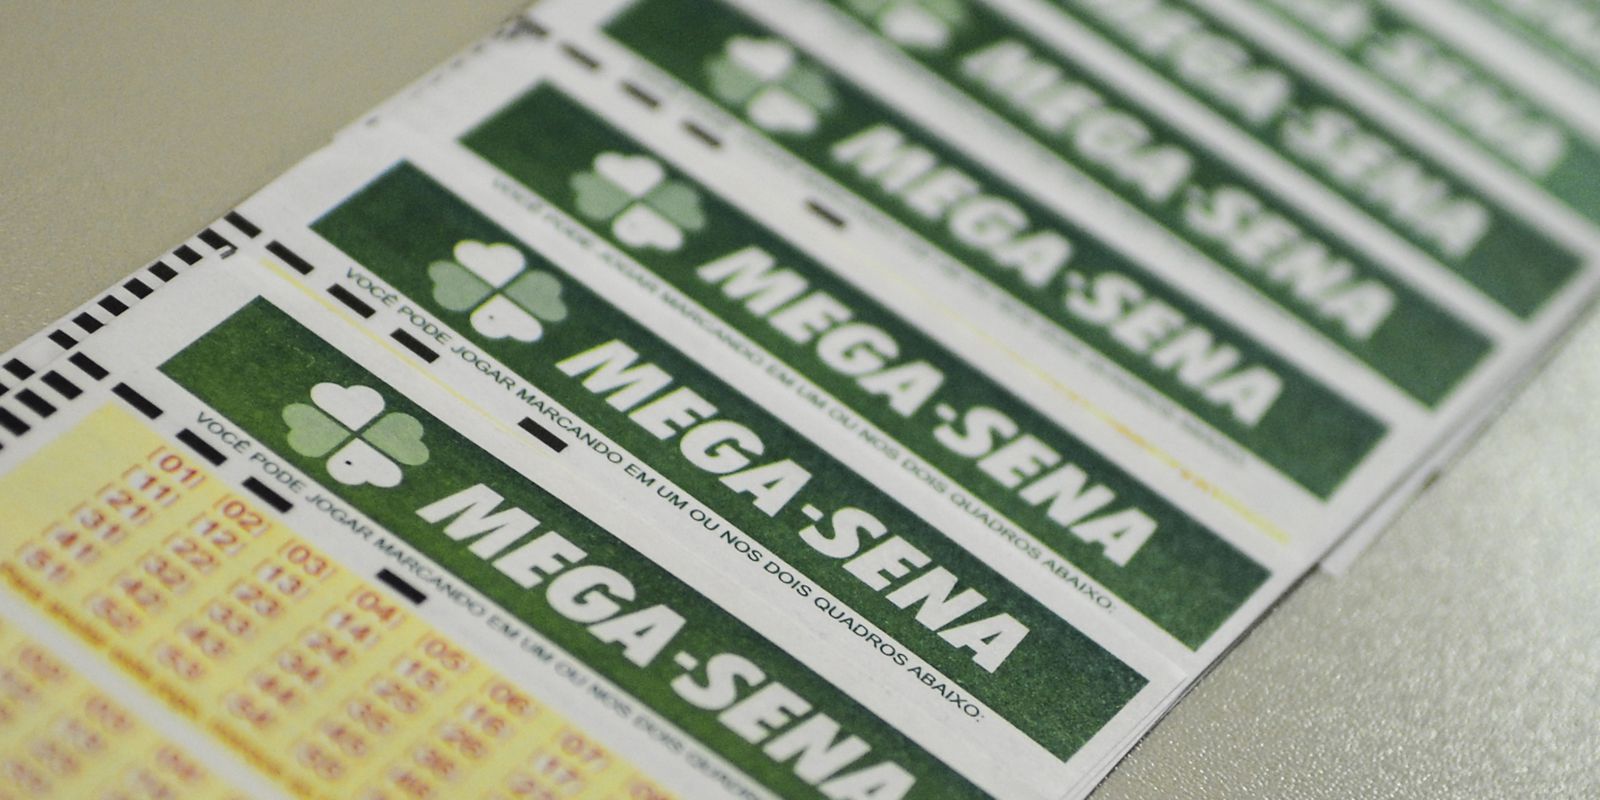 Mega-Sena draws this Tuesday an estimated prize of R$ 3 million